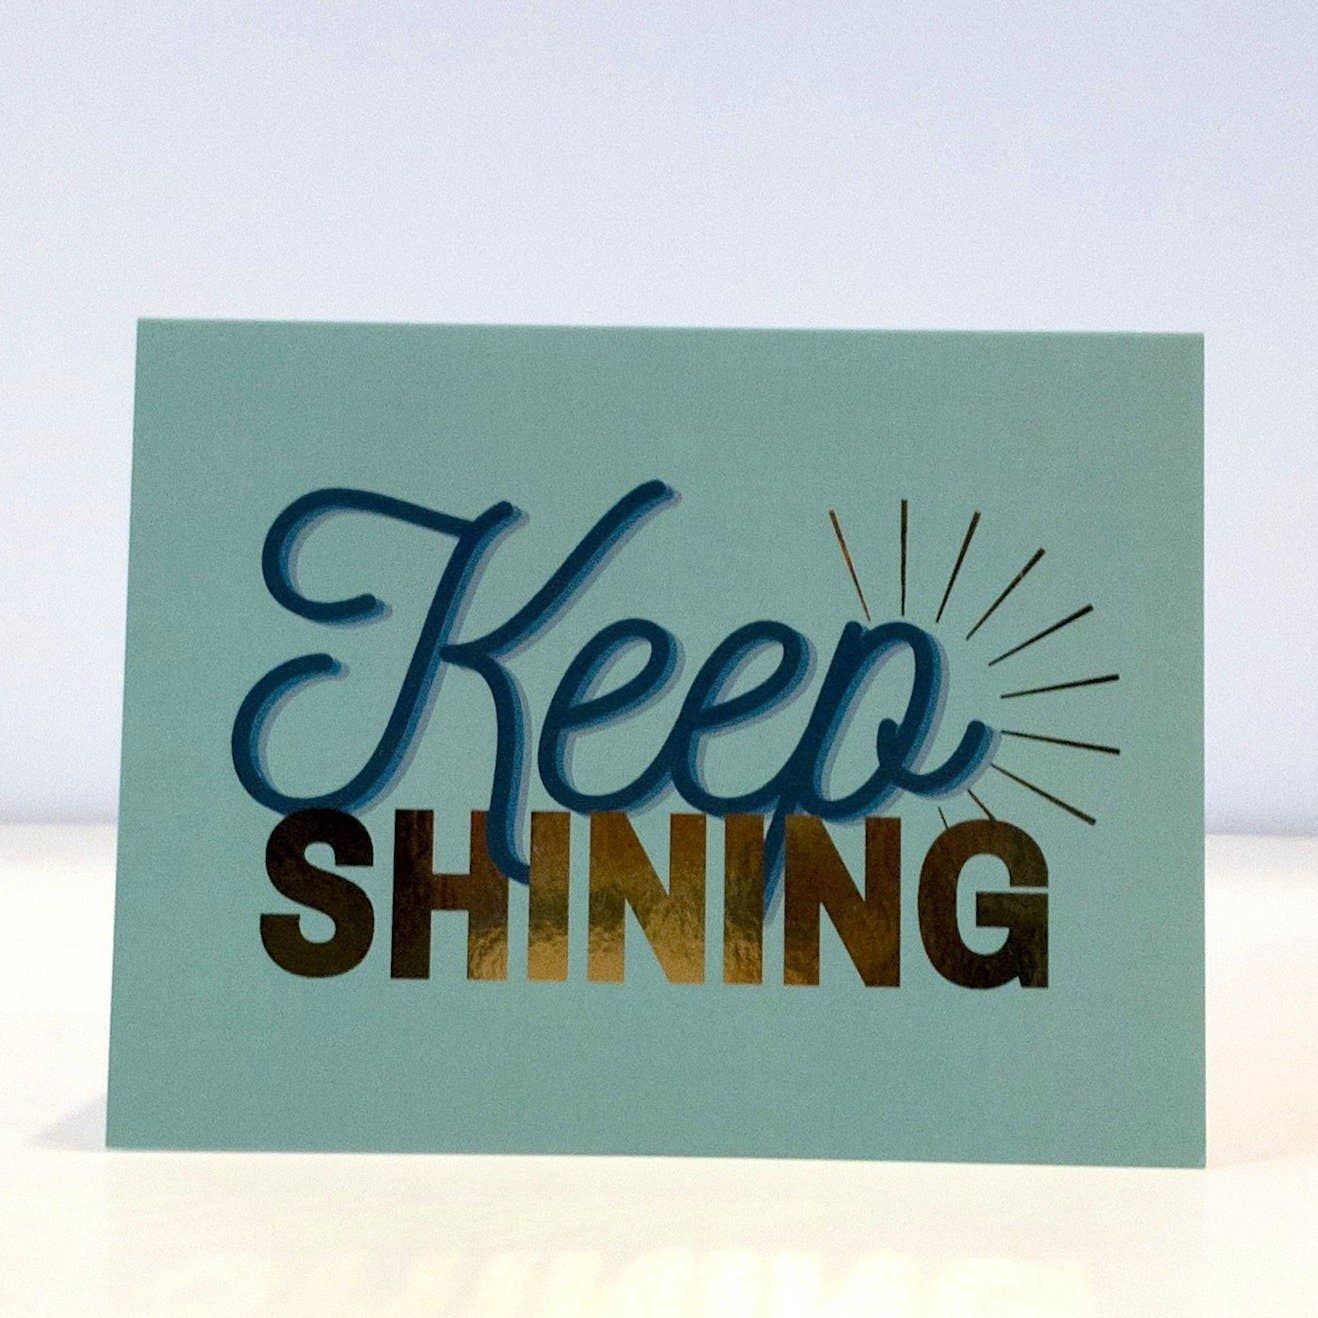 CheerNotes - Keep Shining - Motivational card